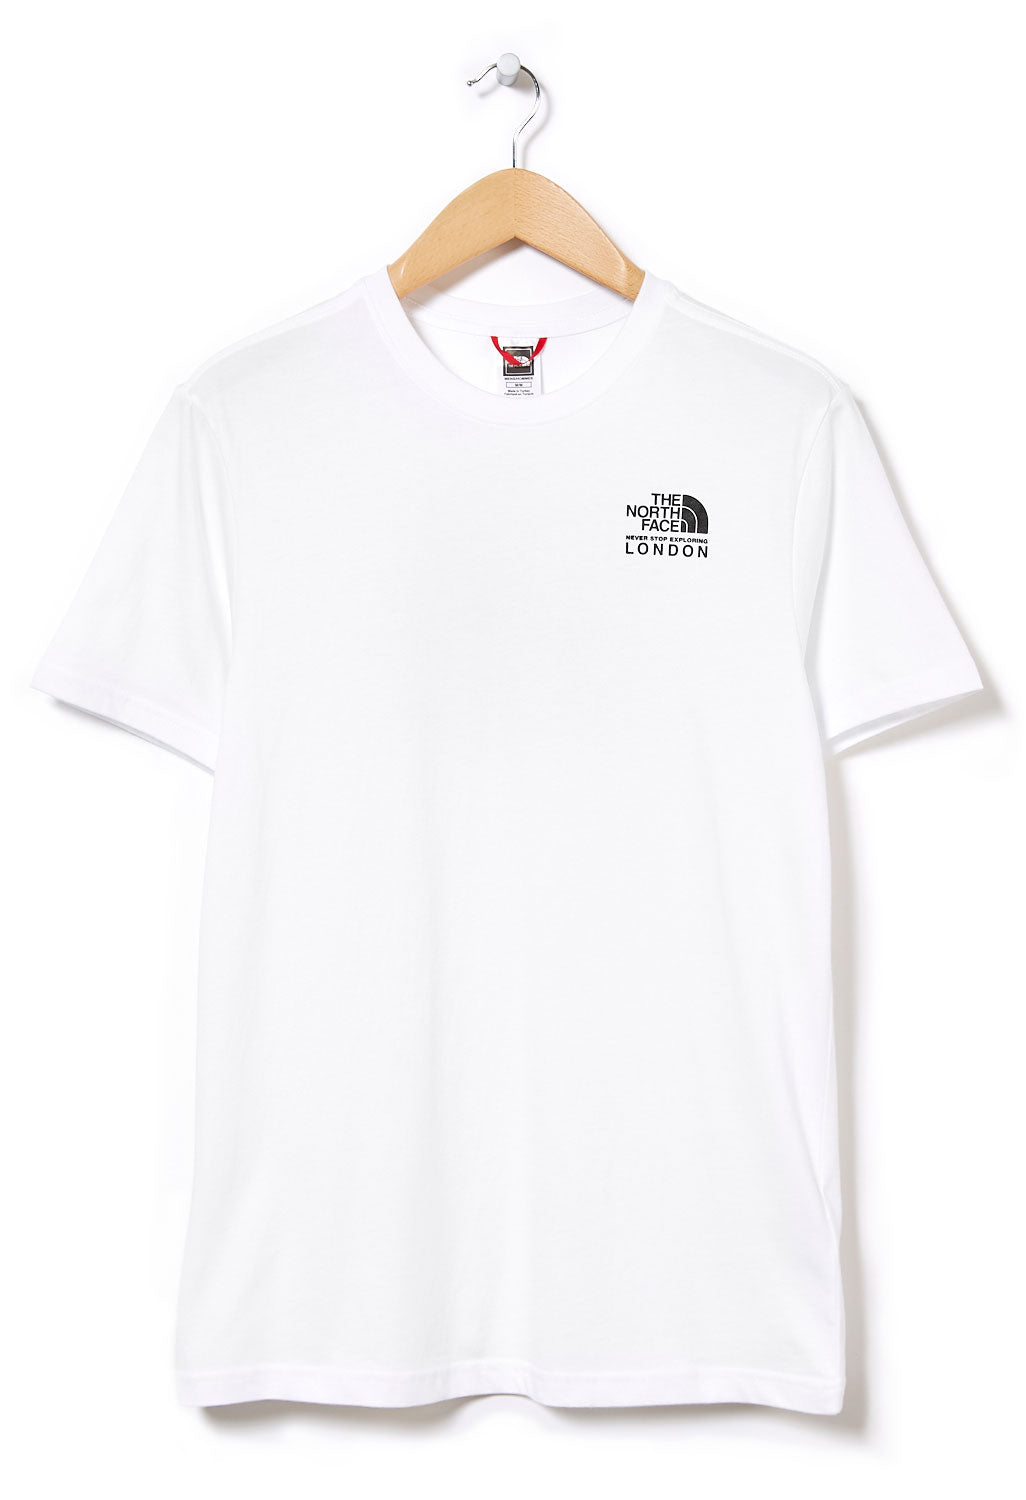 The North Face London Mega City Men's T-Shirt - TNF White